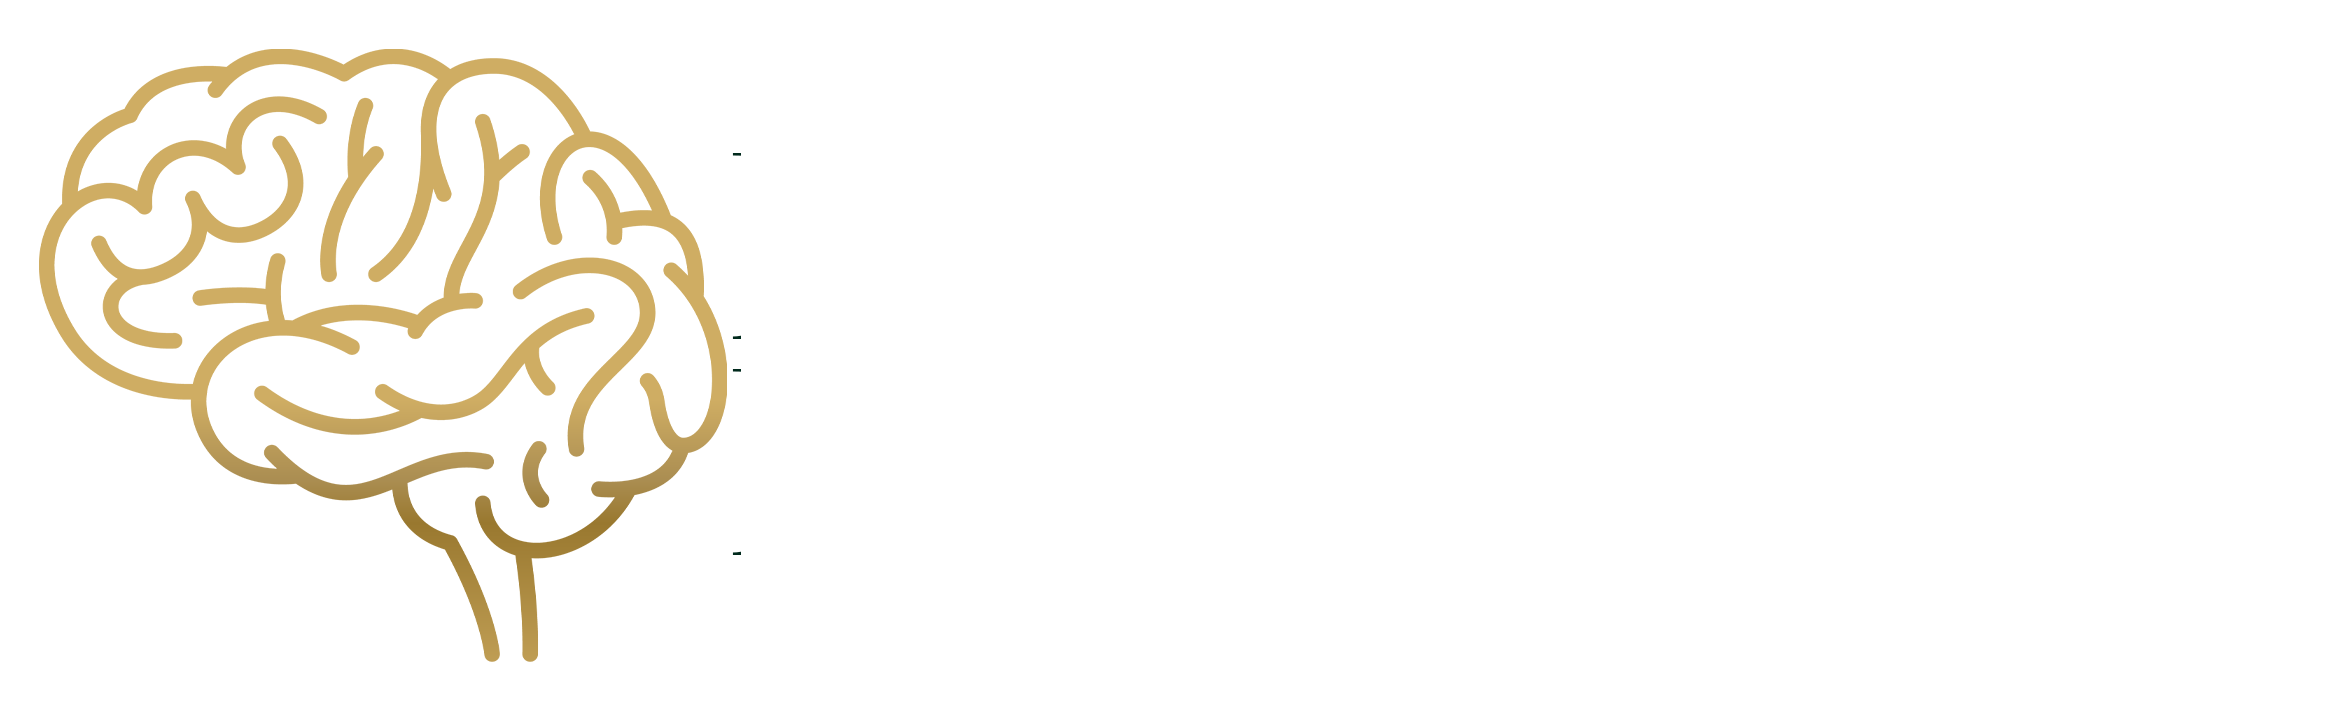 Mindmorale